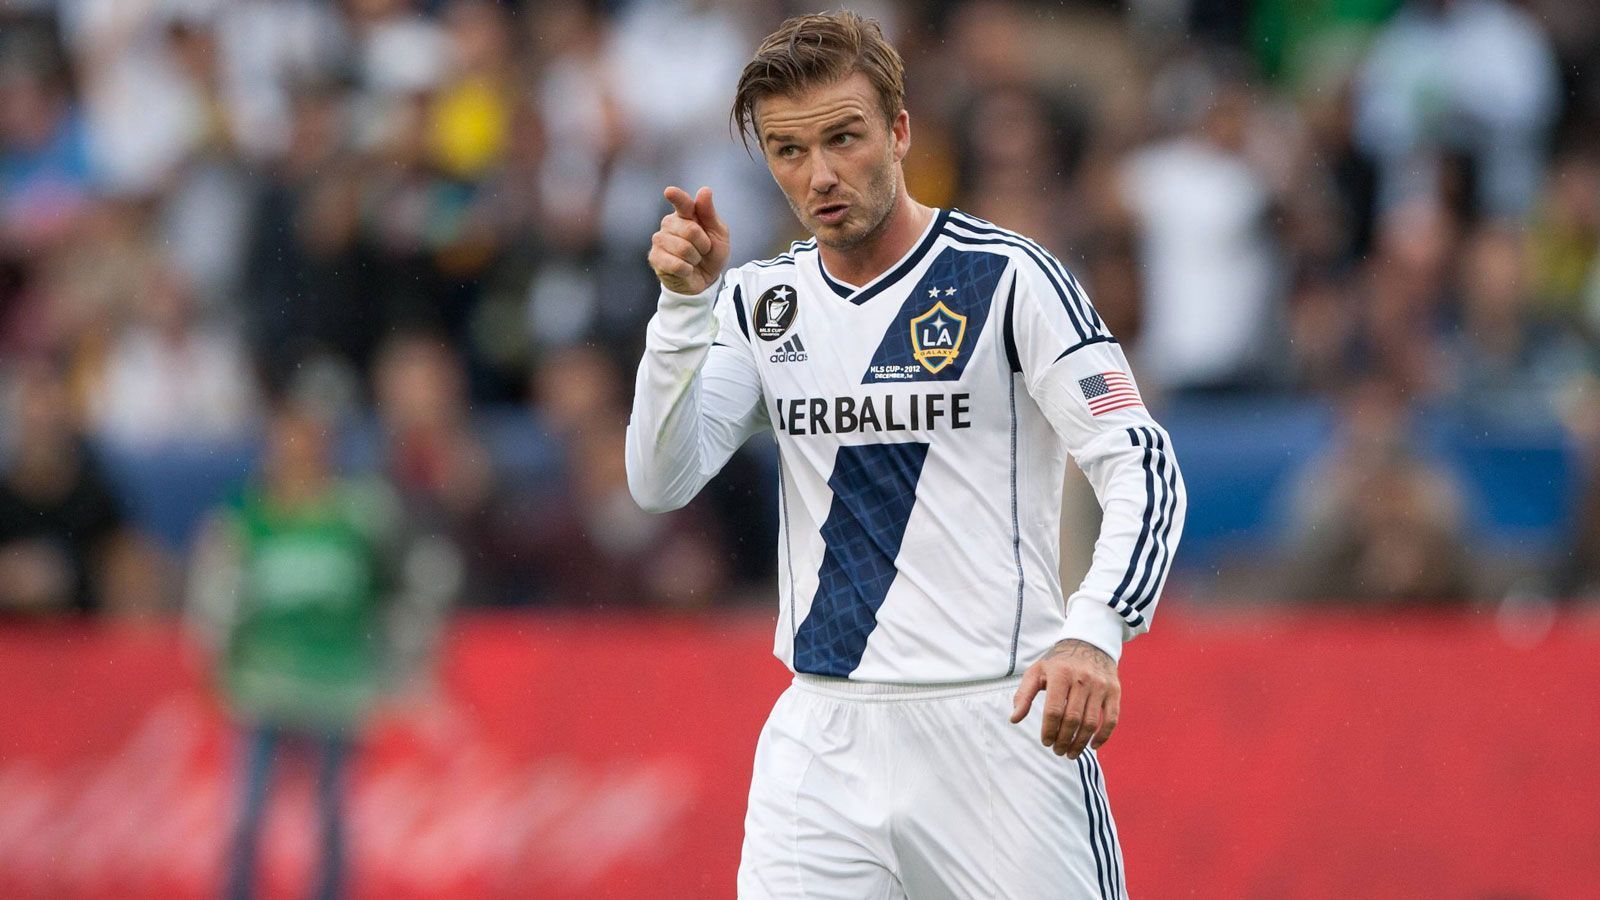 
                <strong>David Beckham</strong><br>
                &#x2022; In der MLS aktiv: 2007 bis 2009, 2010 bis 2012<br>&#x2022; Verein: Los Angeles Galaxy<br>&#x2022; Absolvierte Partien: 124 (20 Tore)<br>
              